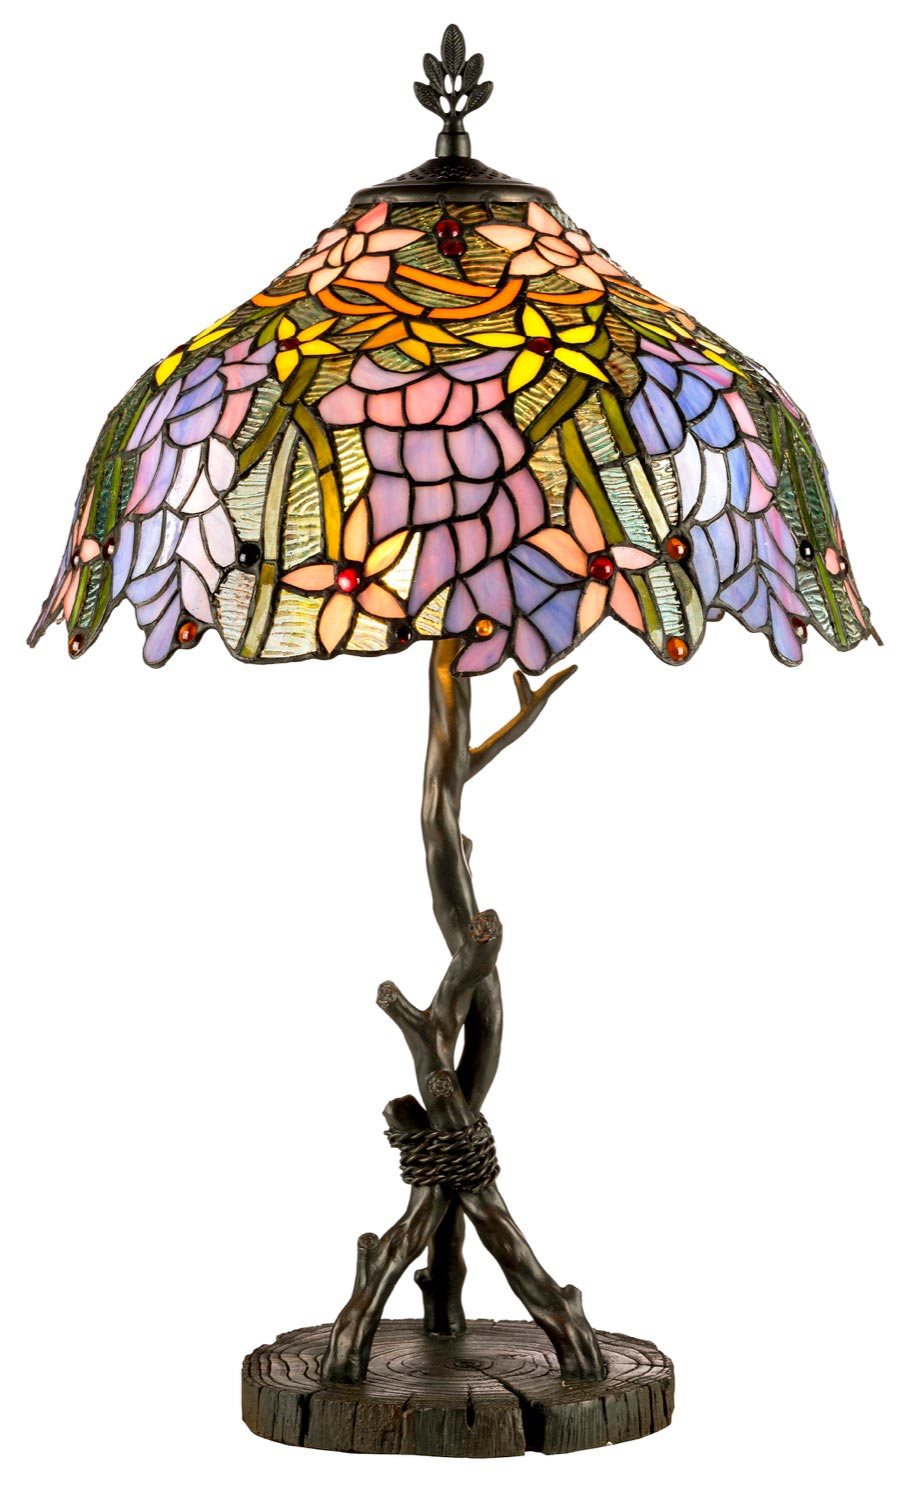 Lampe de table Tiffany végétale et pied branche. Artistar. 